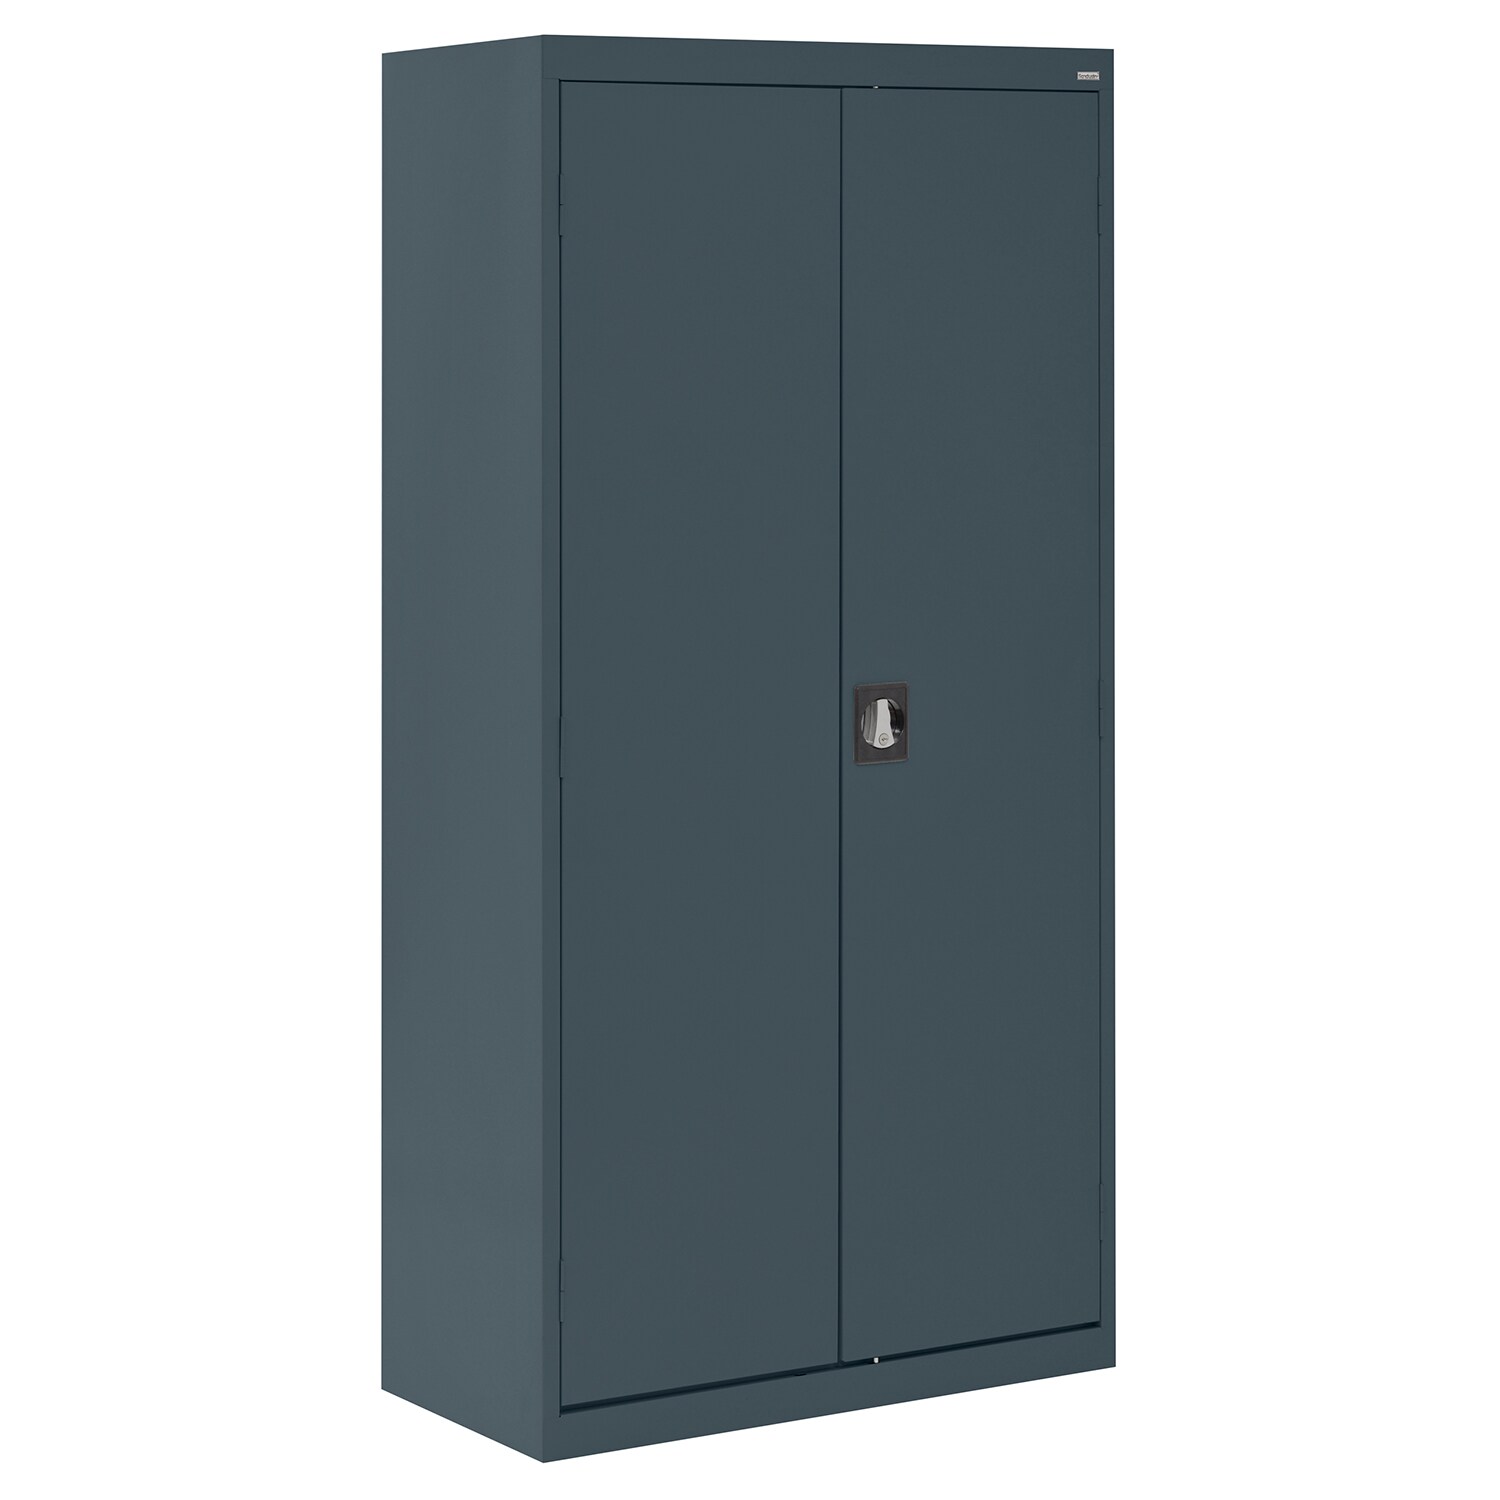 Steel Freestanding Garage Cabinet in Gray (36-in W x 72-in H x 24-in D) | - Sandusky EACR362472-02